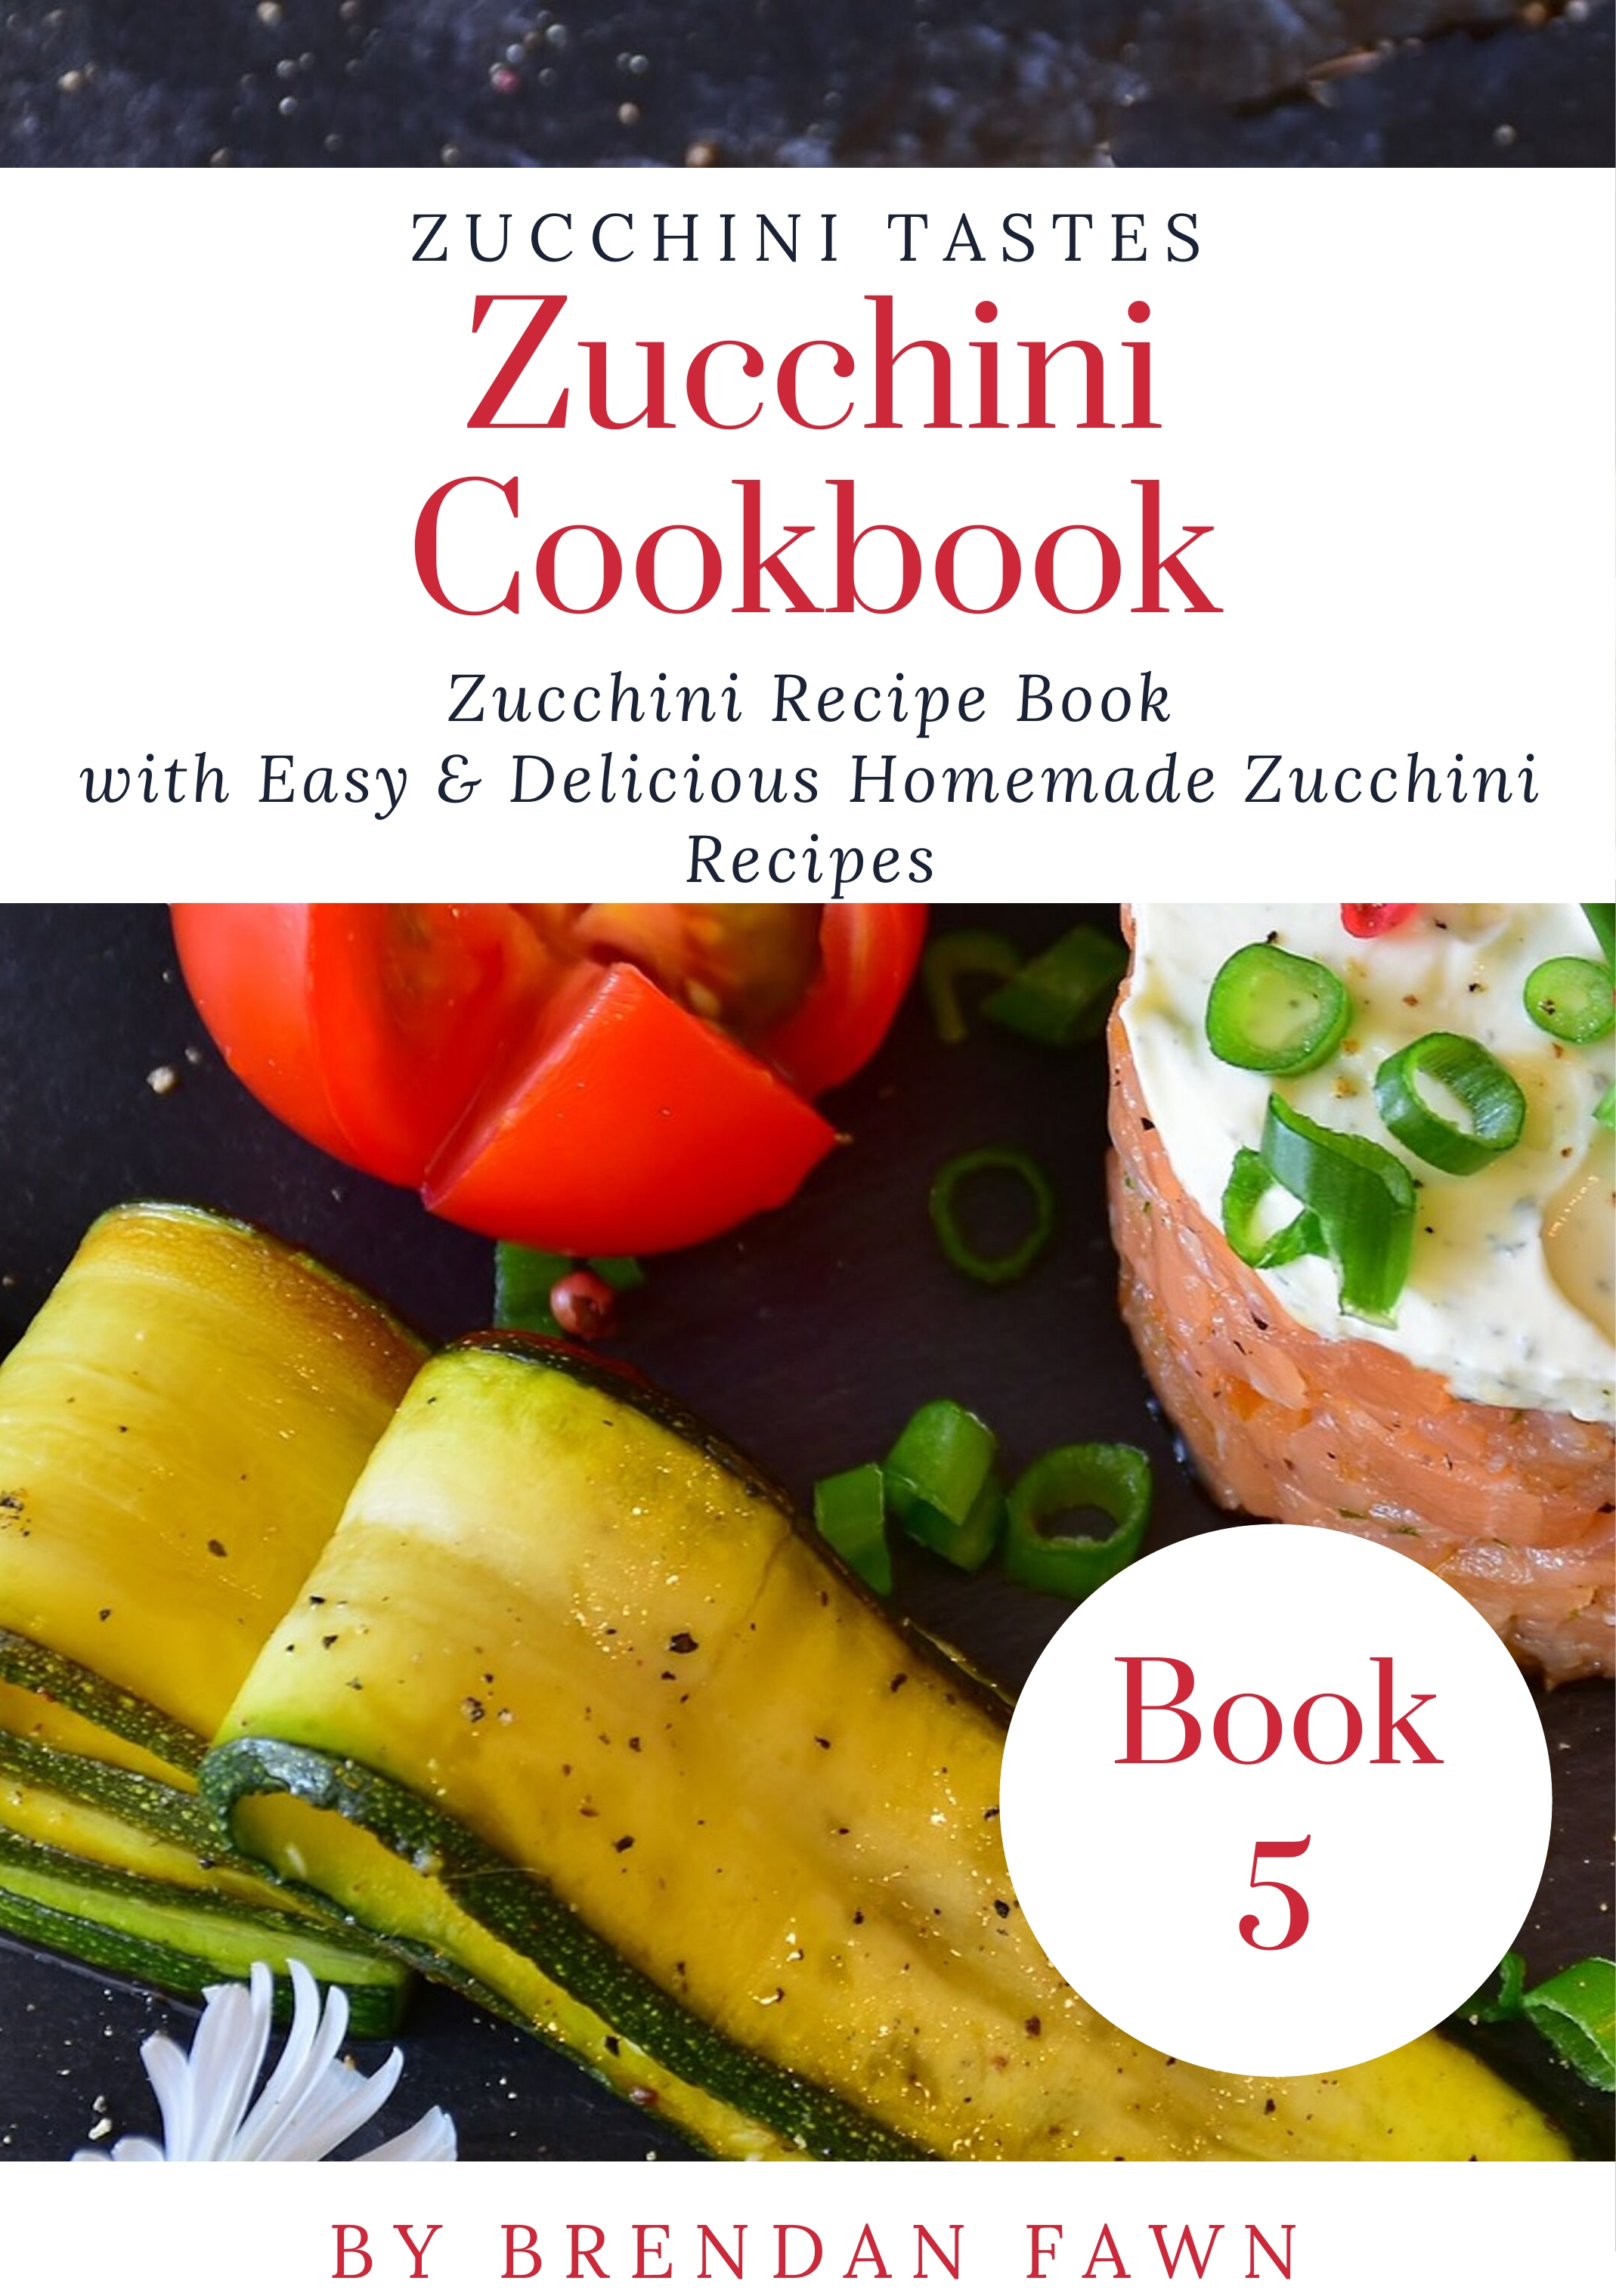 FREE: Zucchini Cookbook: Zucchini Recipe Book with Easy & Delicious Homemade Zucchini Recipes by Brendan Fawn